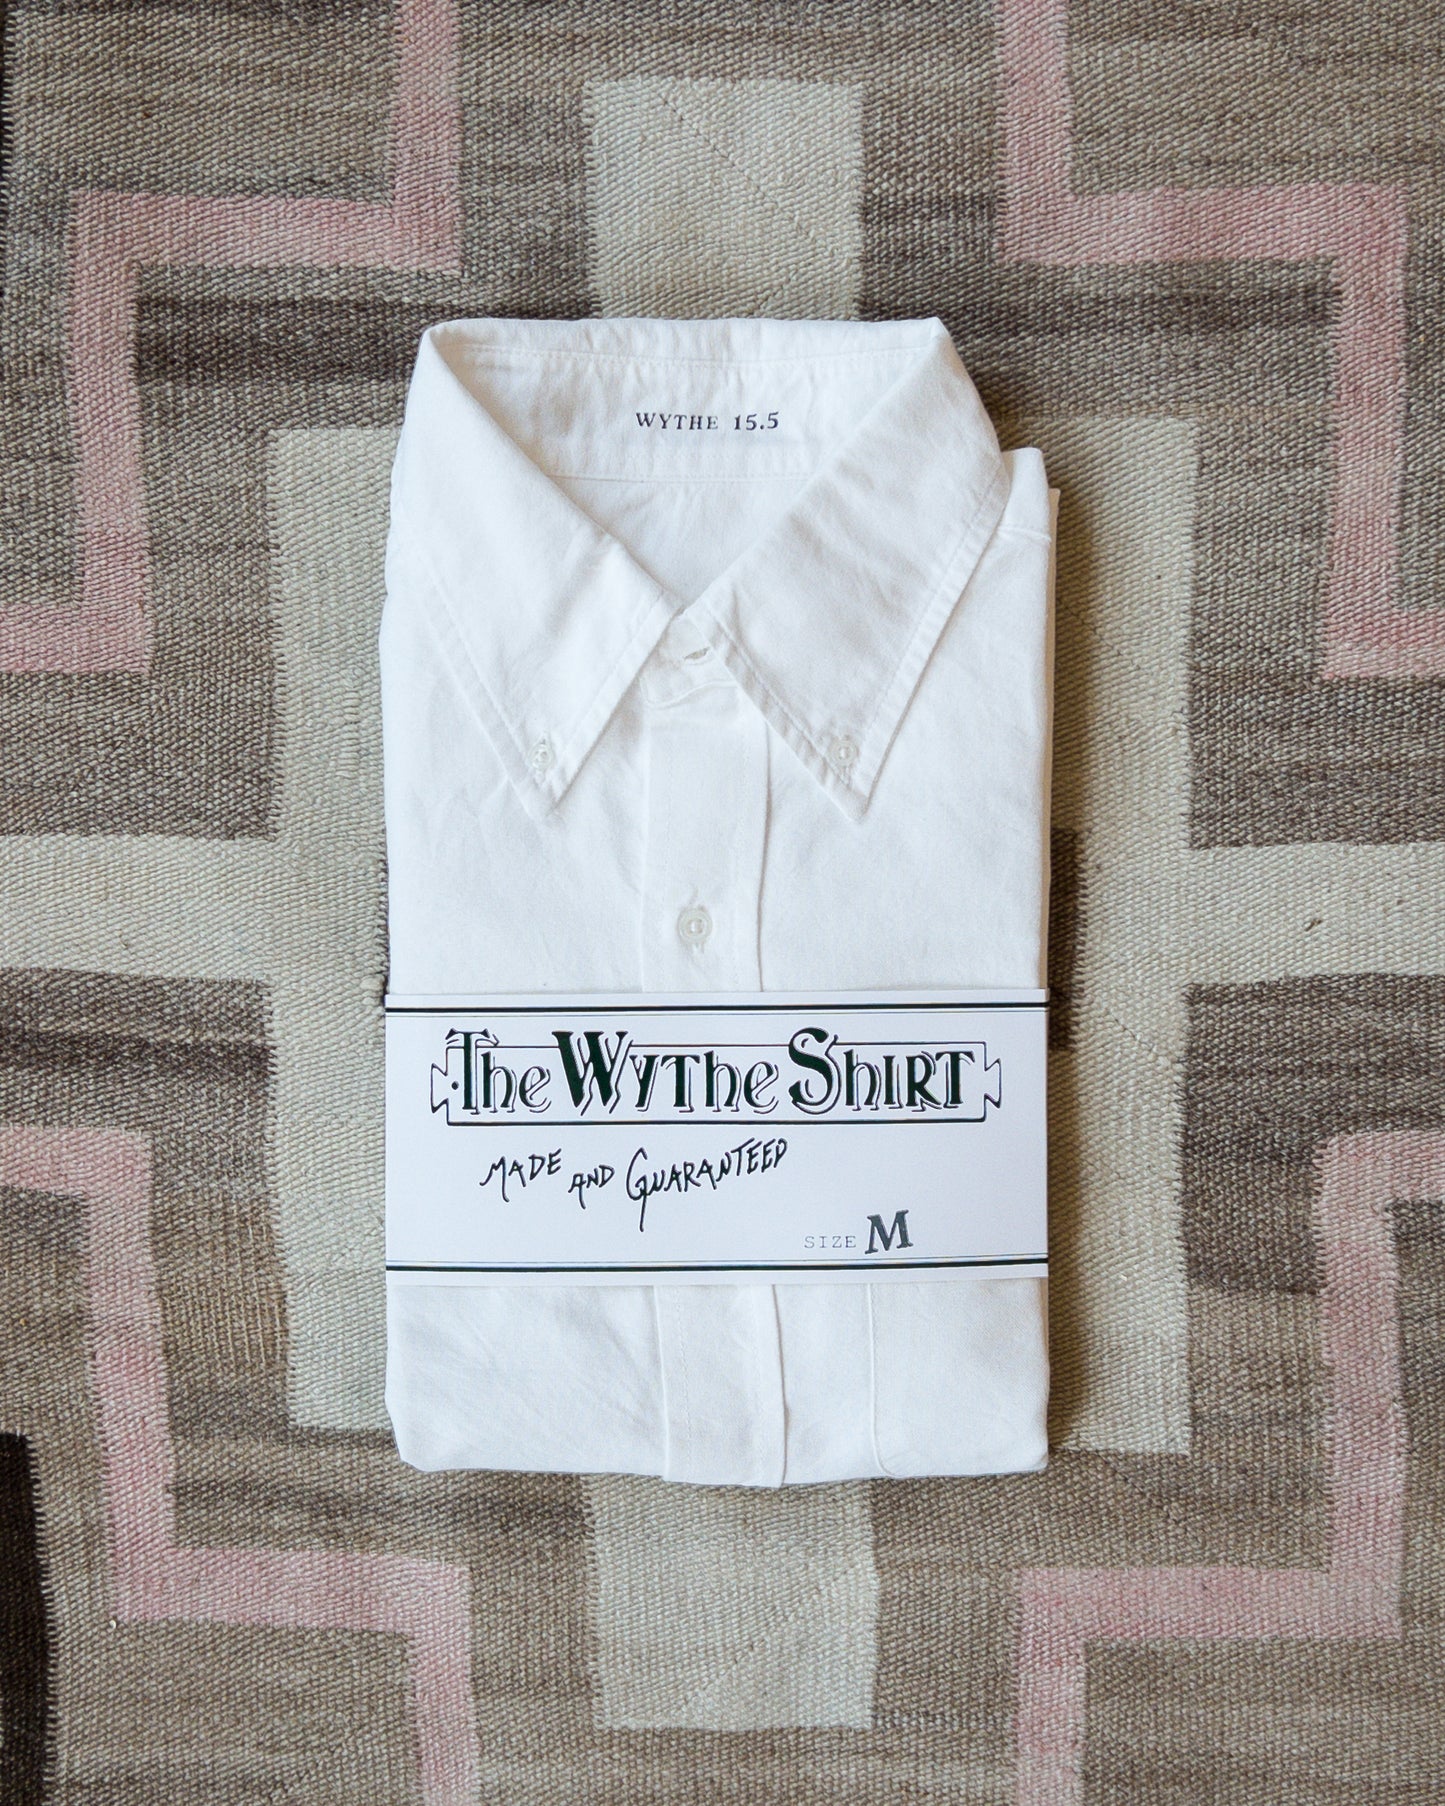 *NEW* Oxford Cloth Button Down - Classic White